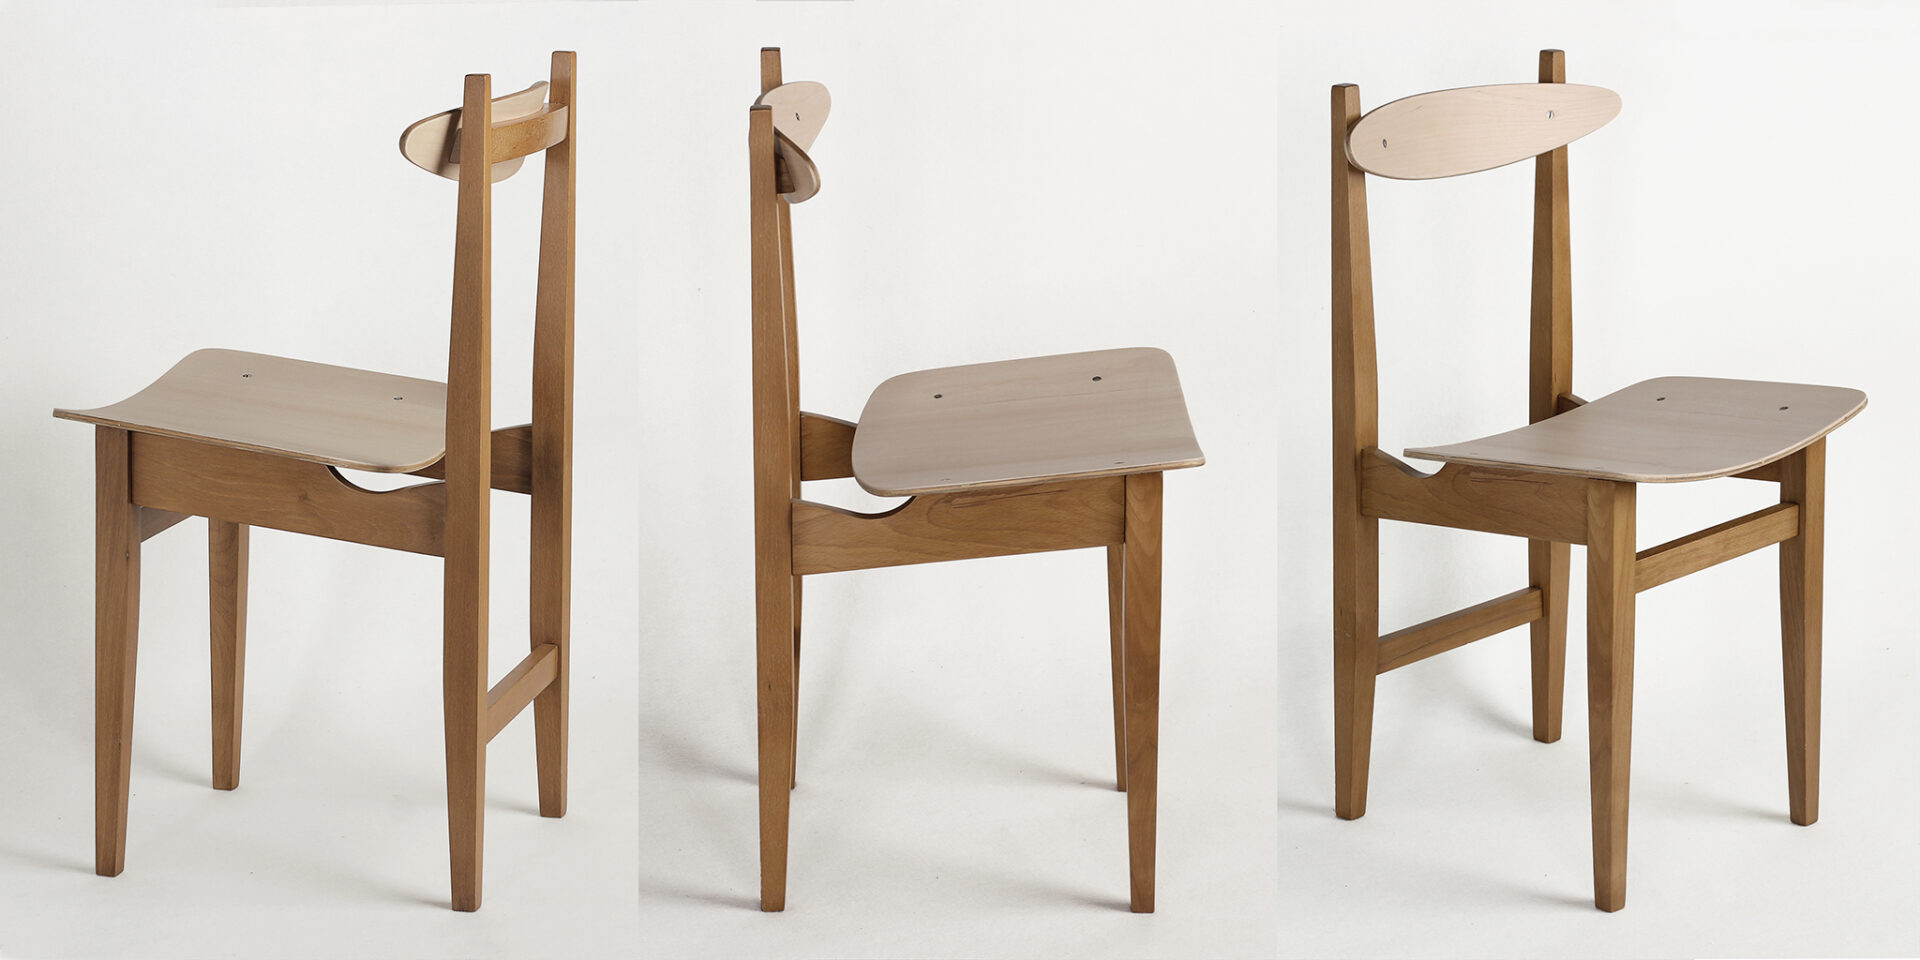 Krzesło stolarskie typ 200-102 proj. Maria Chomentowska